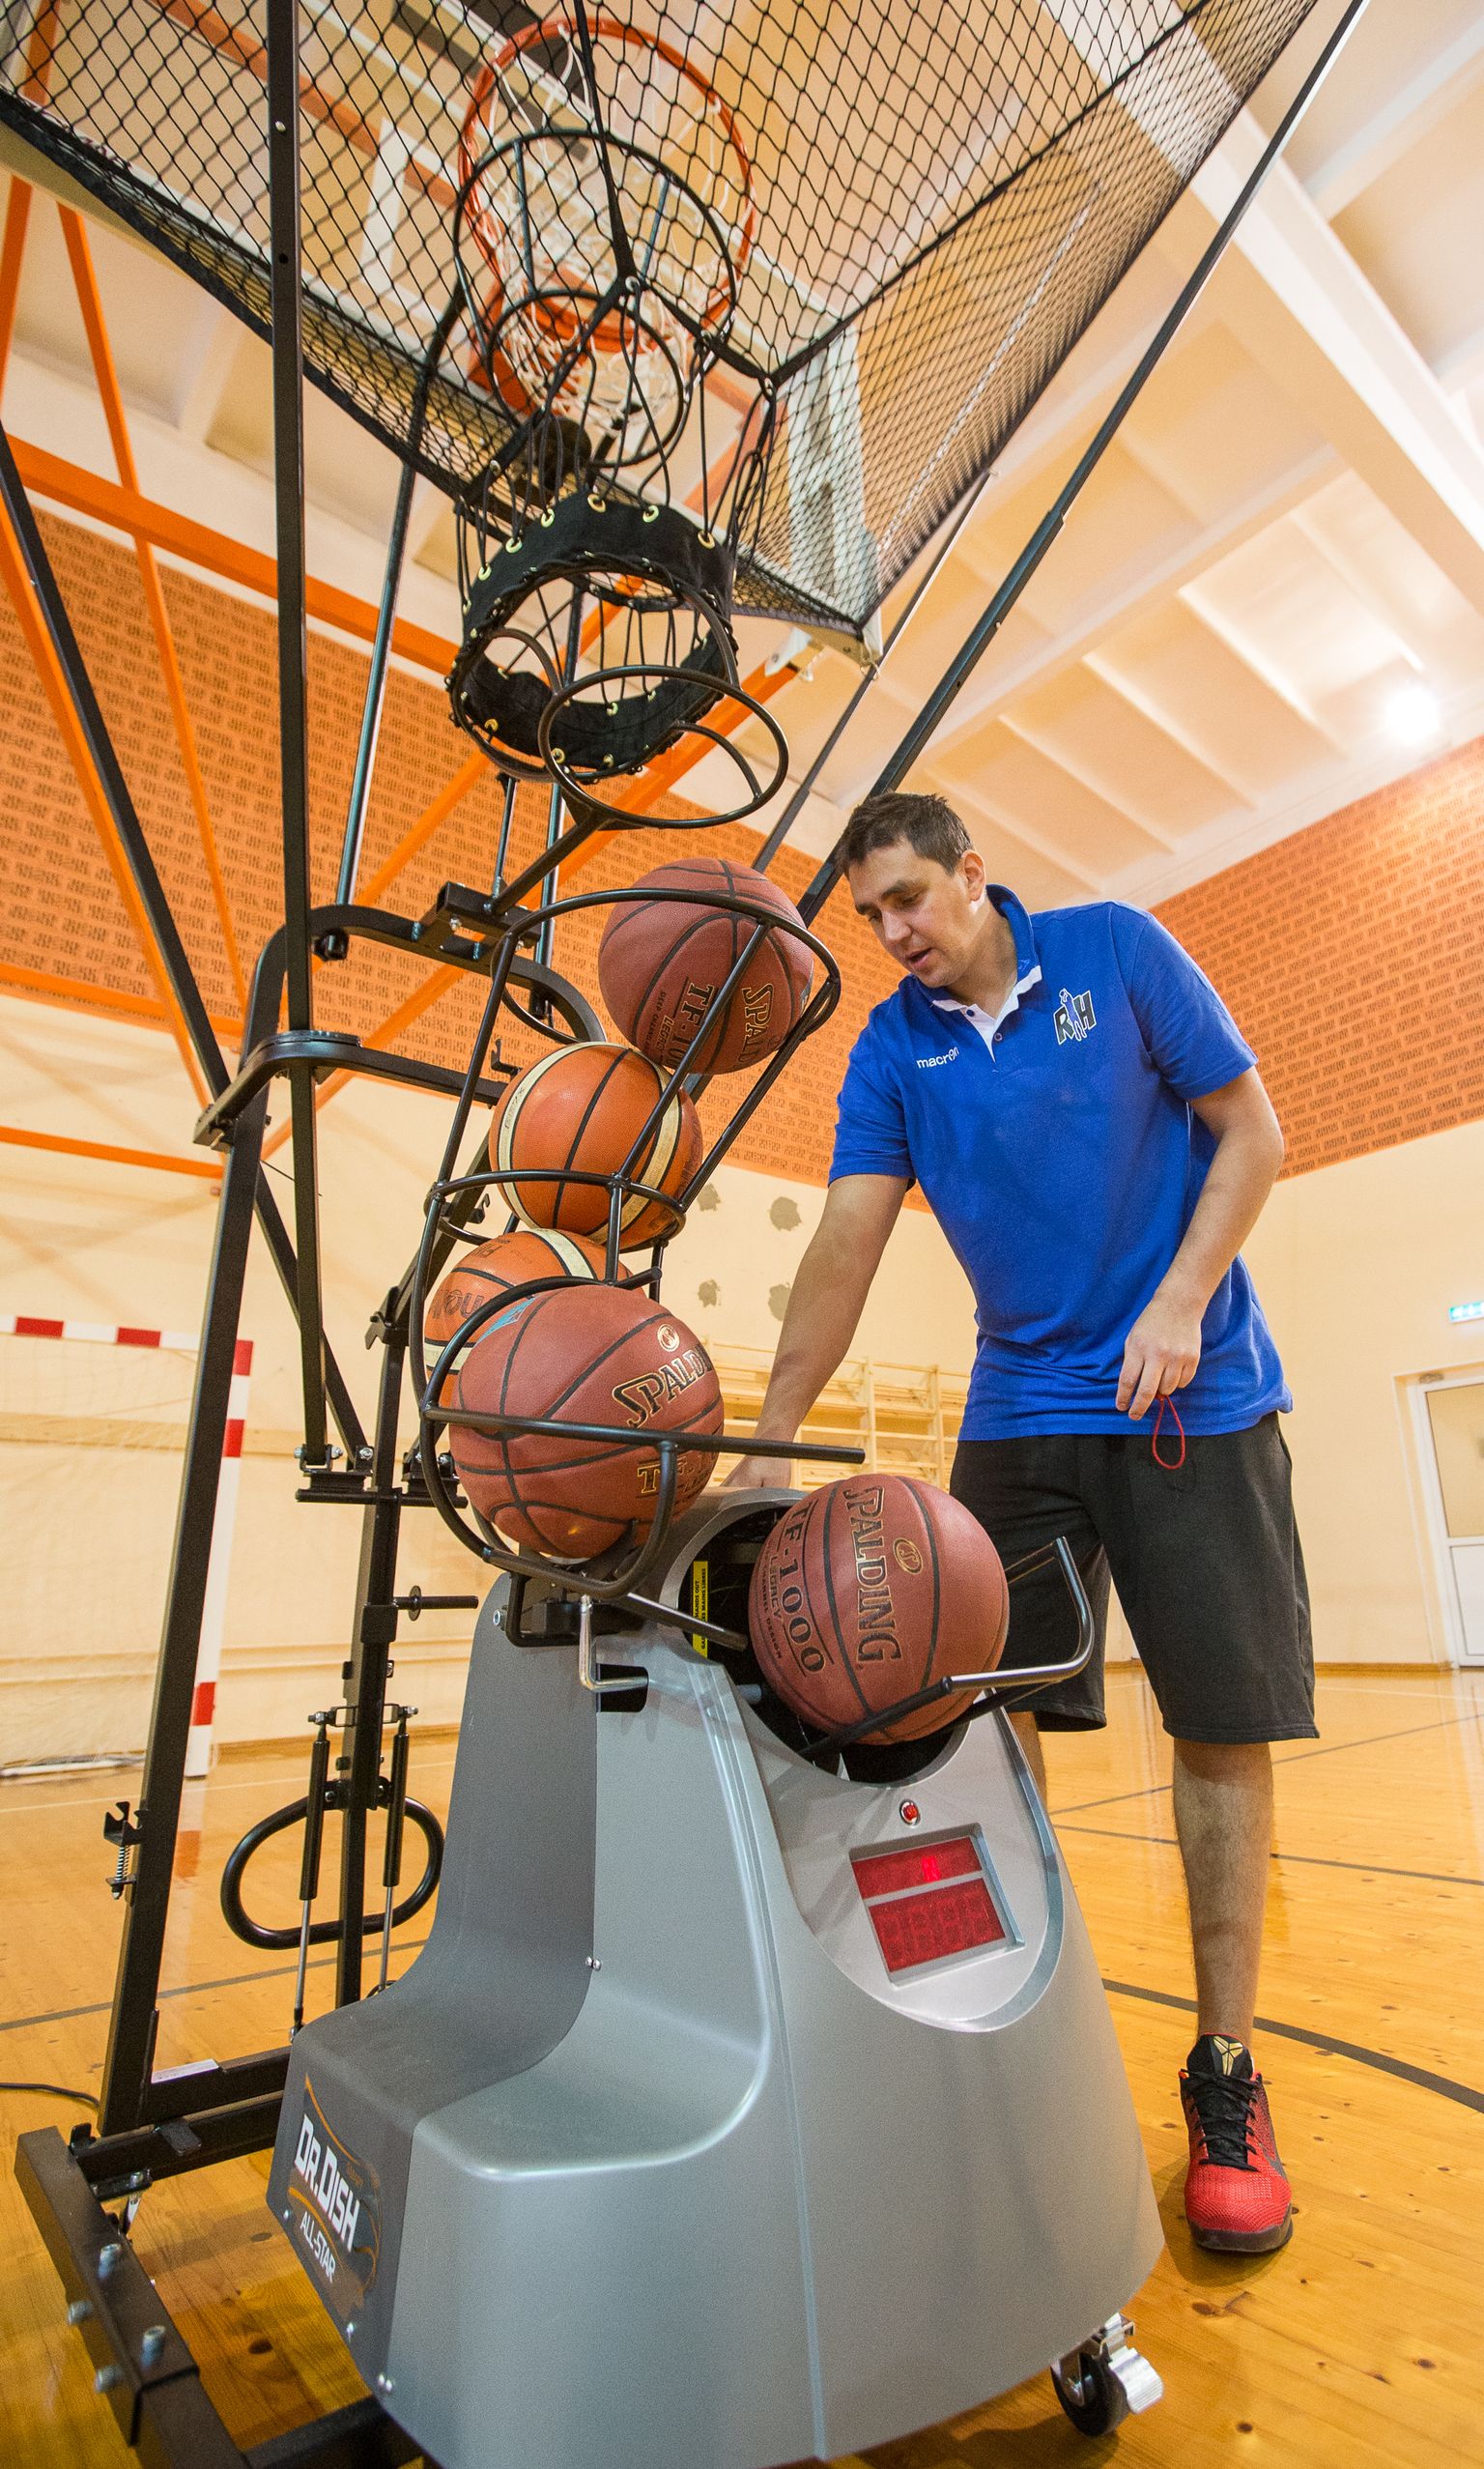 Neli aastat Iisakus tegutsenud Reinar Halliku korvpalliakadeemia paneb pallid kotti. Korvpallikool, kus treenivad põhikooli lapsed, jätkab esialgu veel tegevust.